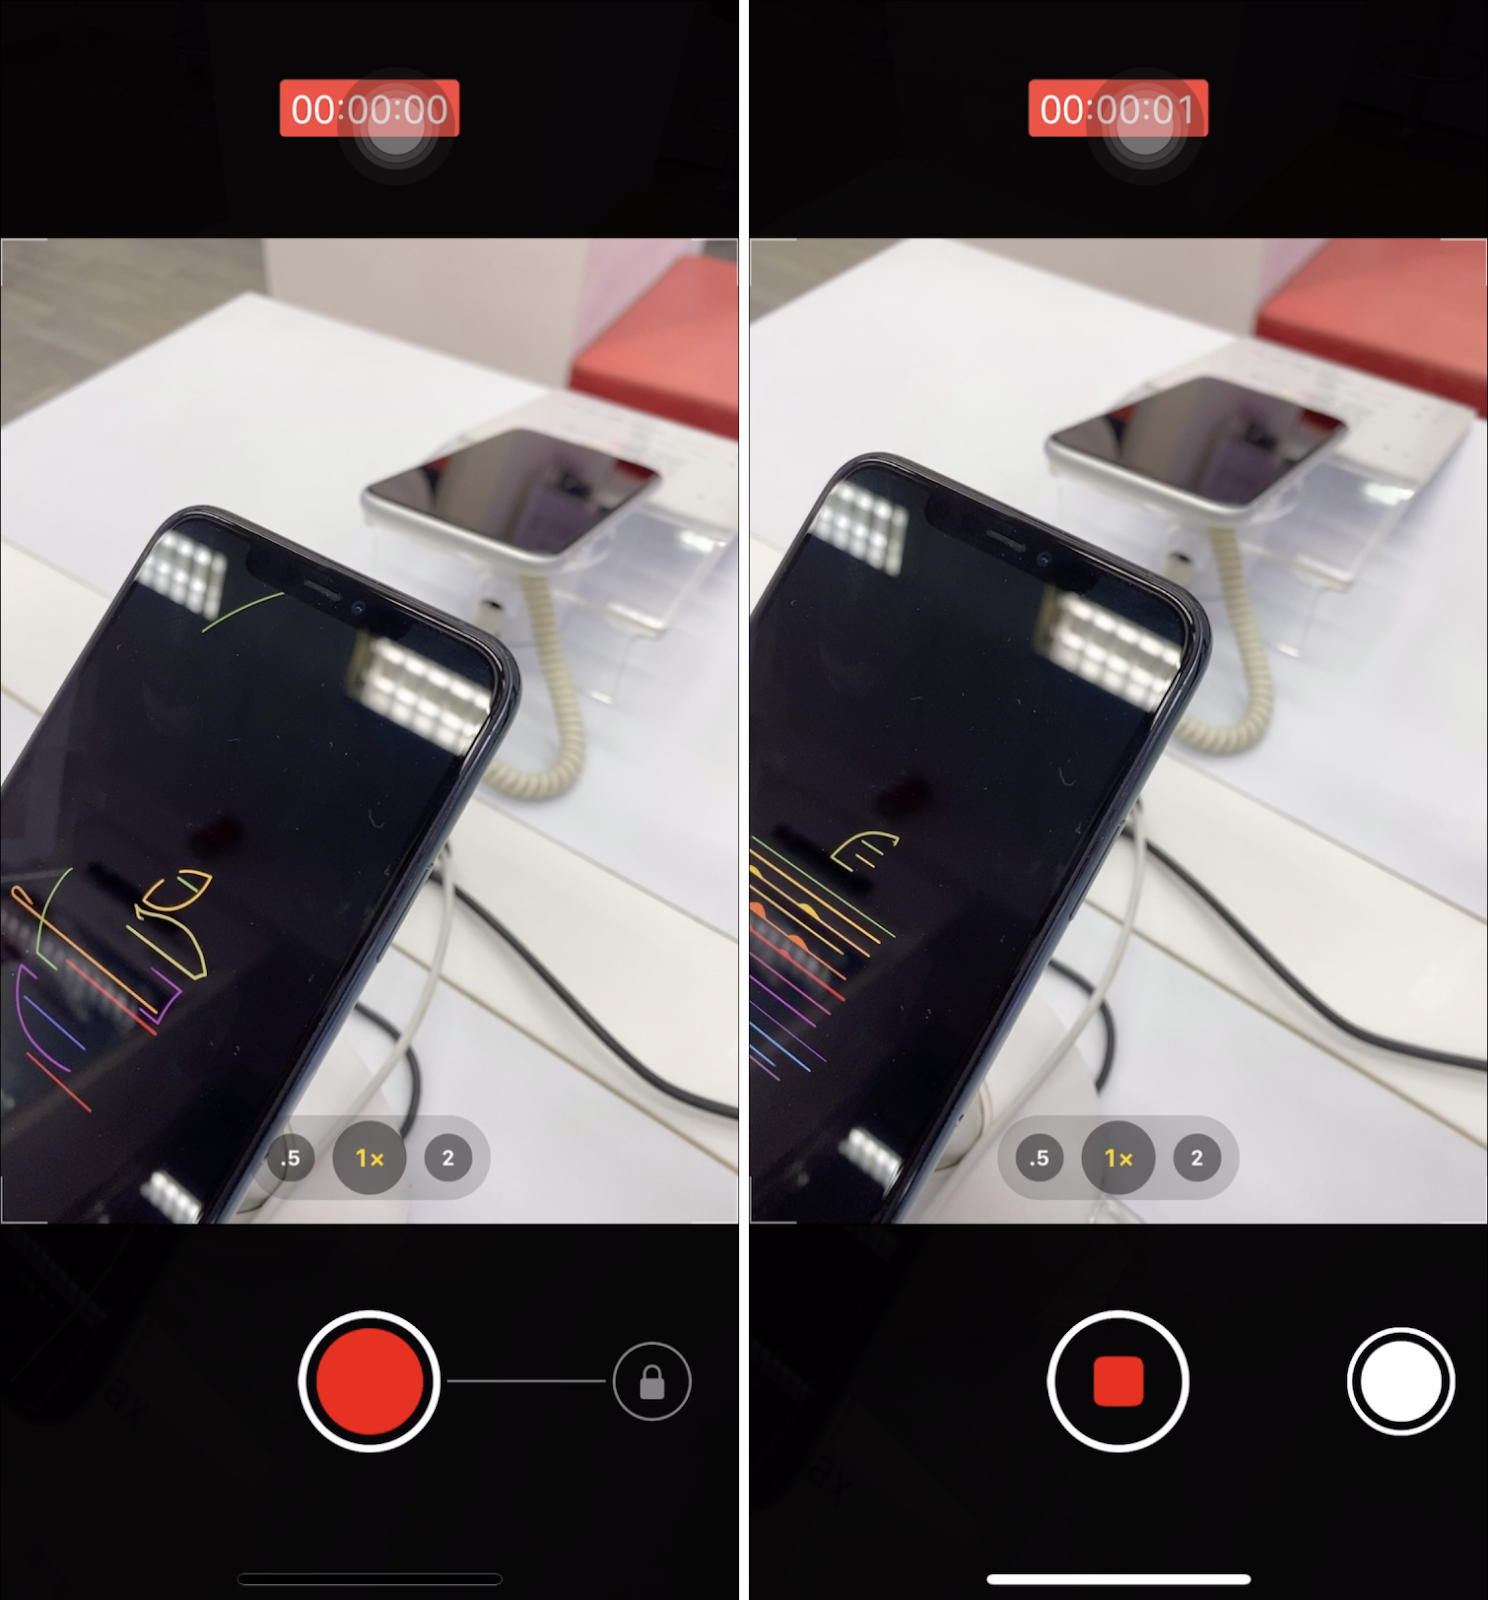 iPhone 11 系列手機如何拍照模式快速切換成錄影模式與自動連續拍攝多張照片 - 電腦王阿達